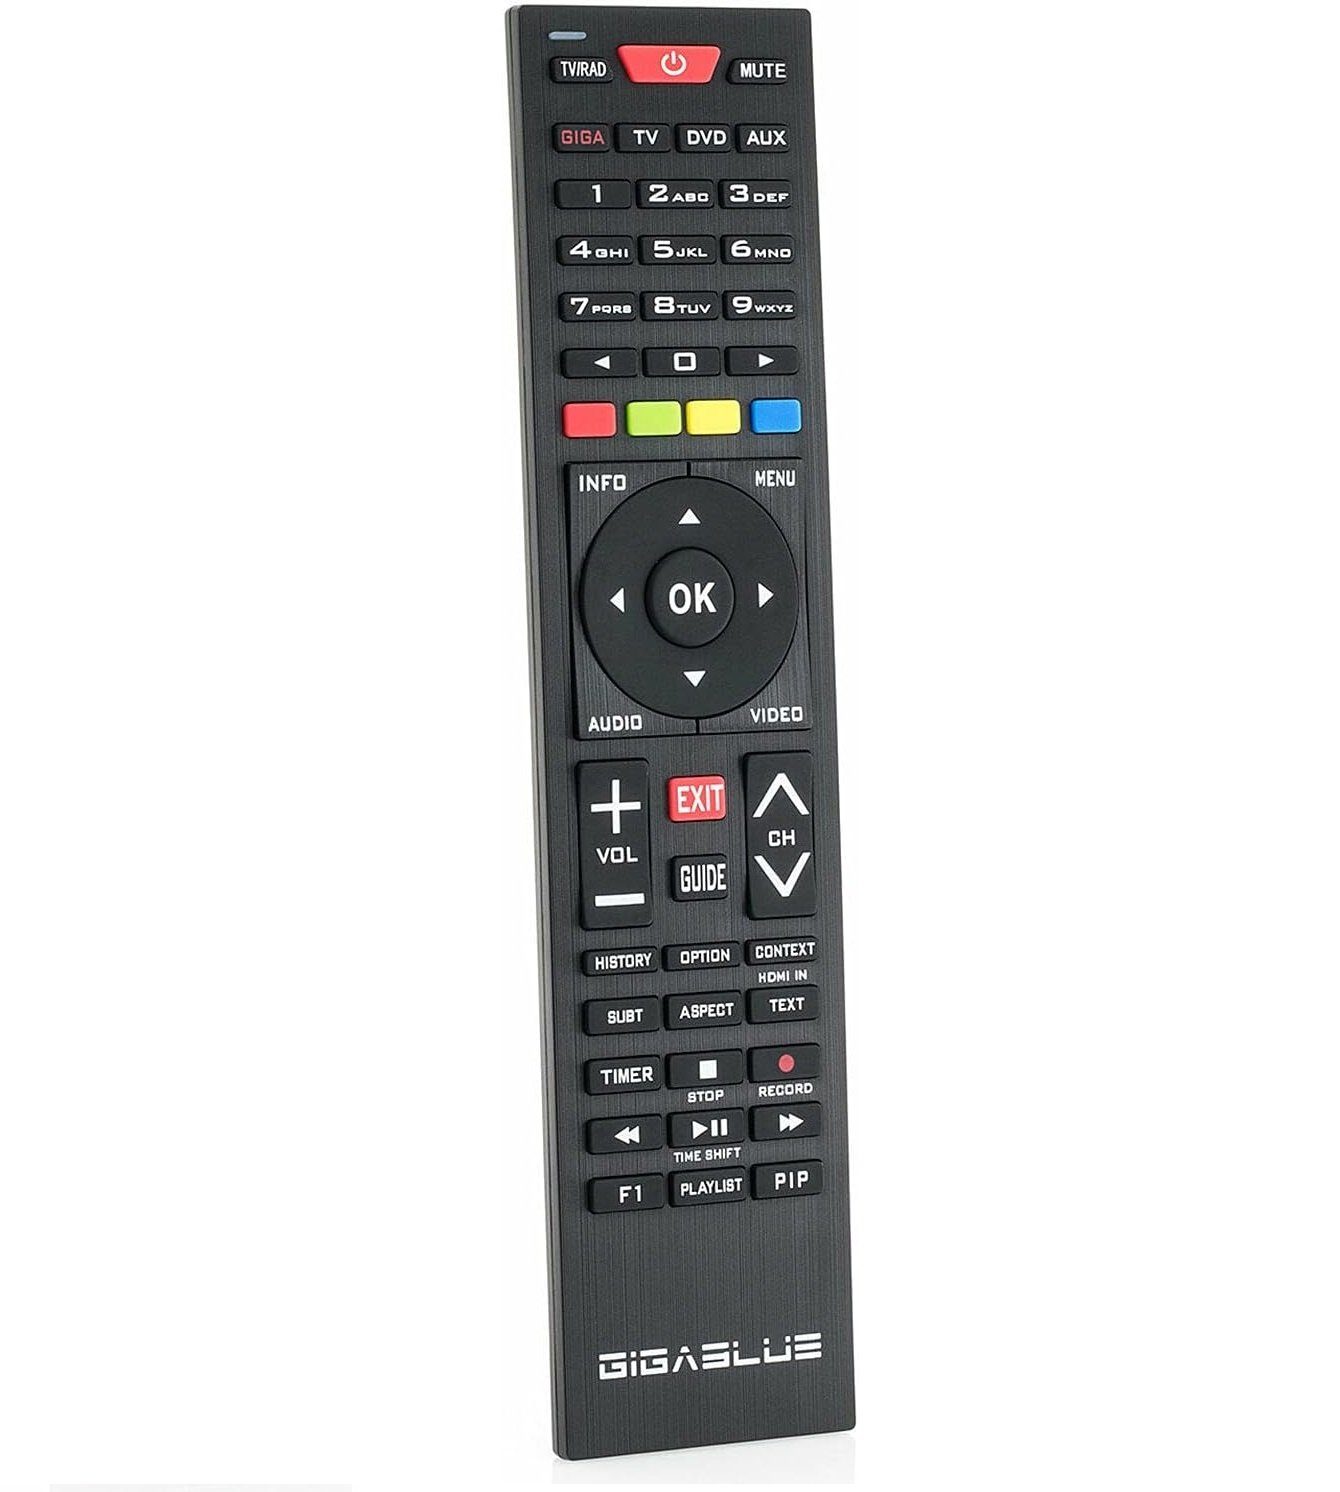 Gigablue GigaBlue PVR HDTV Satellitenreceiver UHD DVB-S2 2x Sat FBC CI Twin Linux 4K Receiver